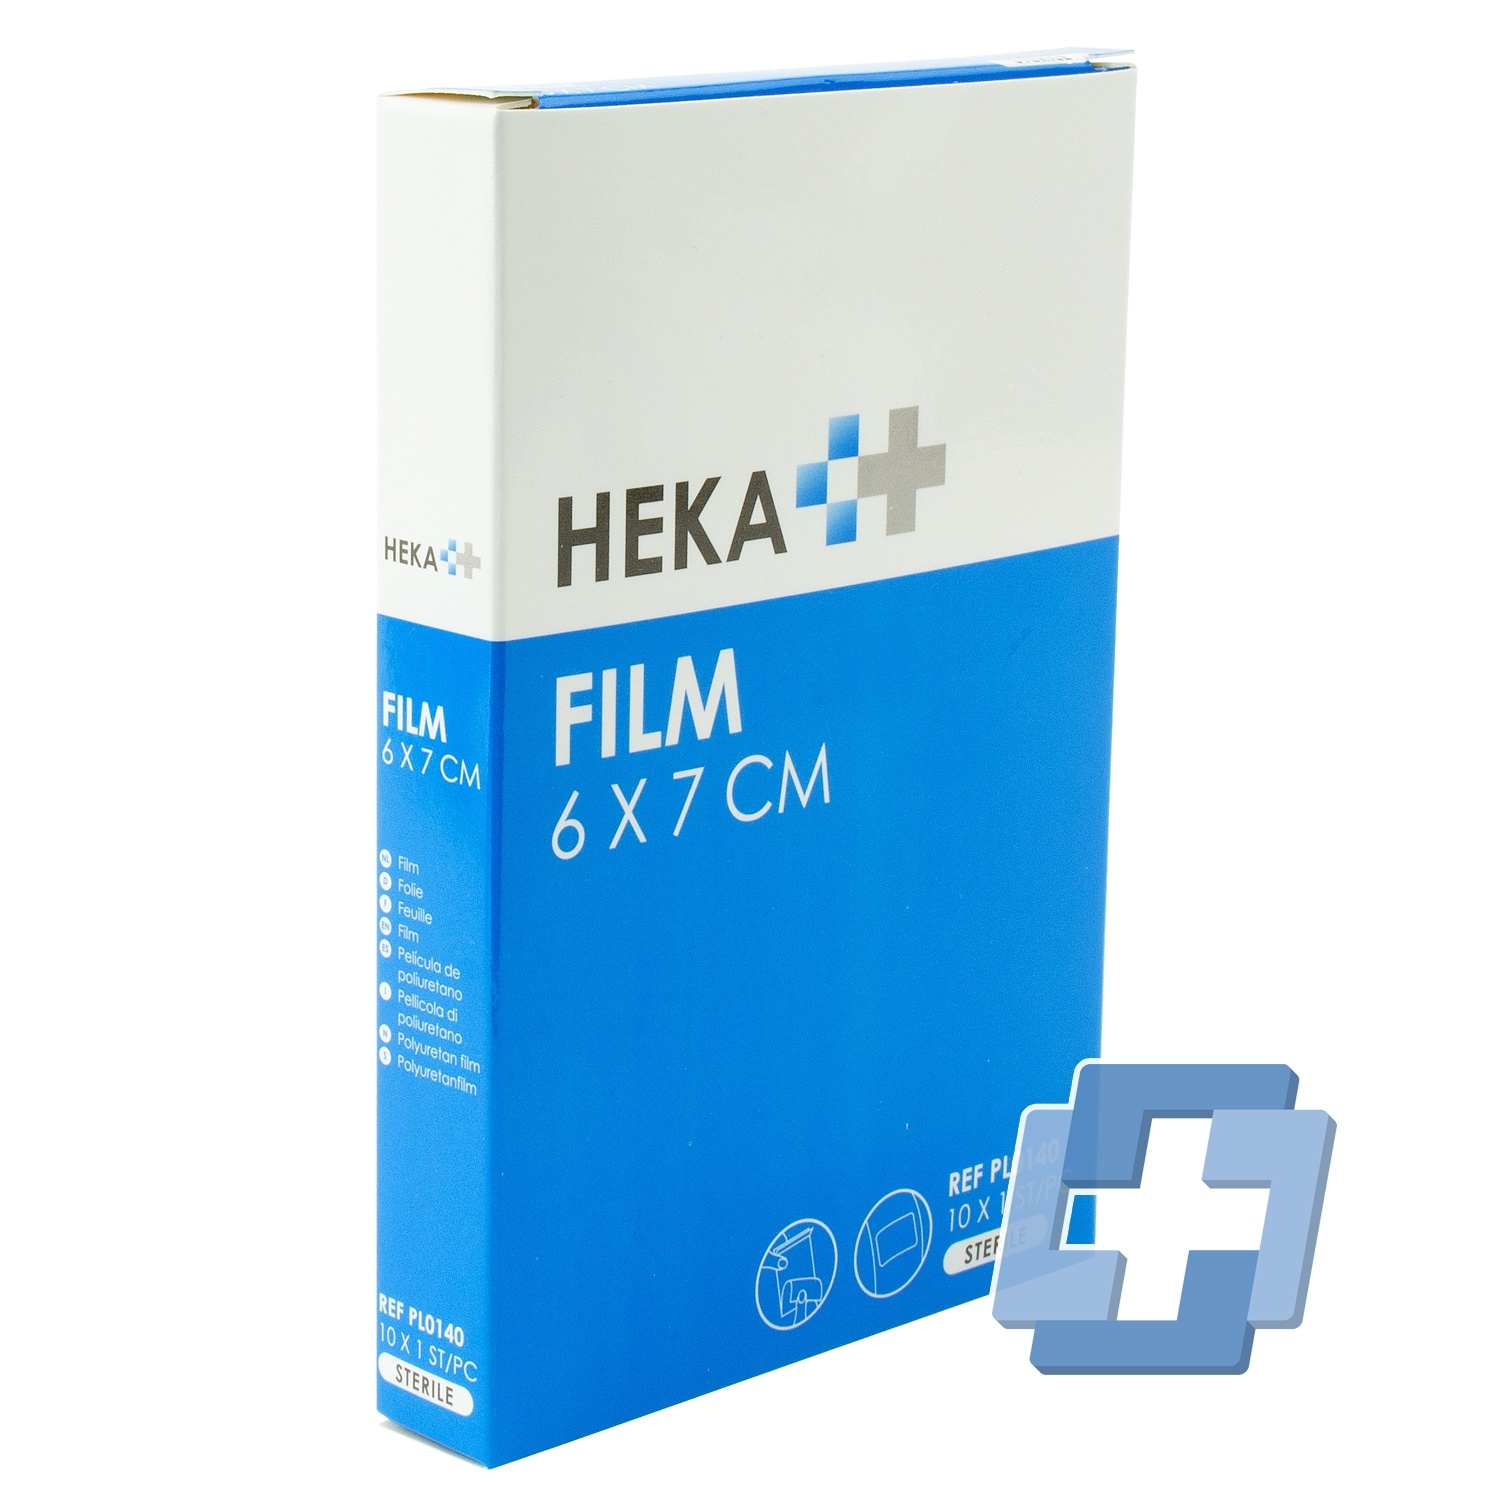 HEKA Film steril - 6 x 7 cm (10 Stück)